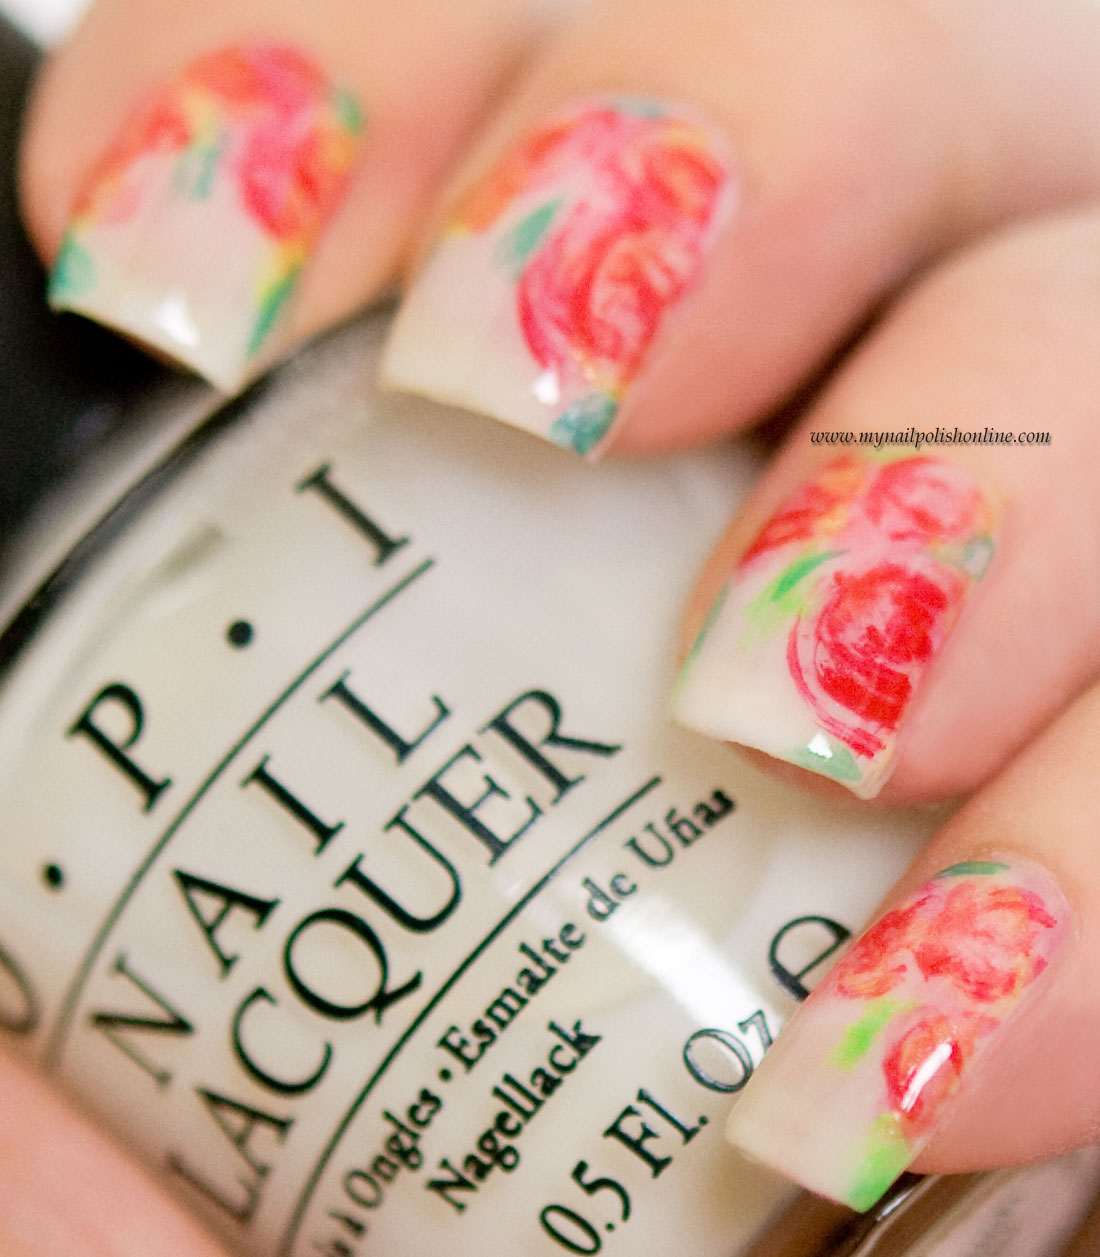 Nail Art - Roses